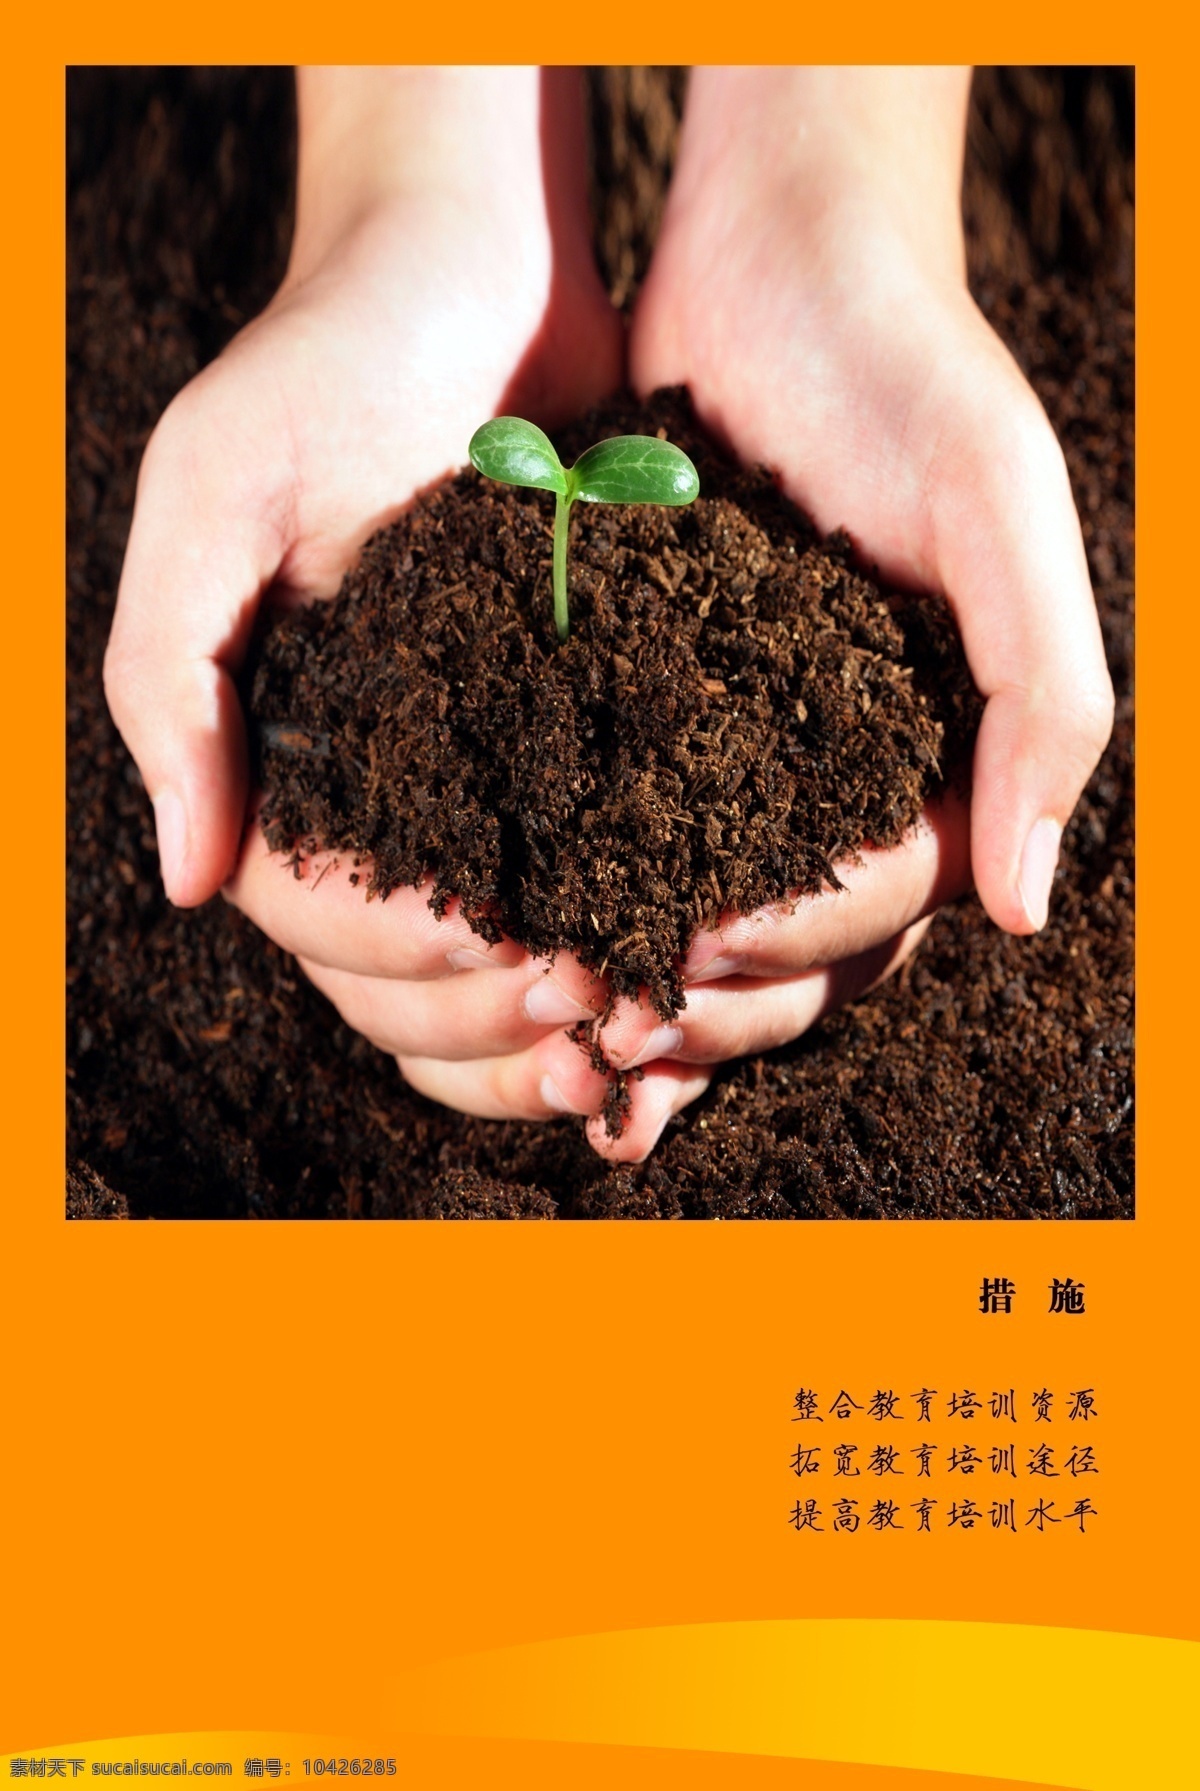 企业 展板 素材图片 广告设计模板 设计素材 双手 土壤 线条 源文件 植物 企业文化海报